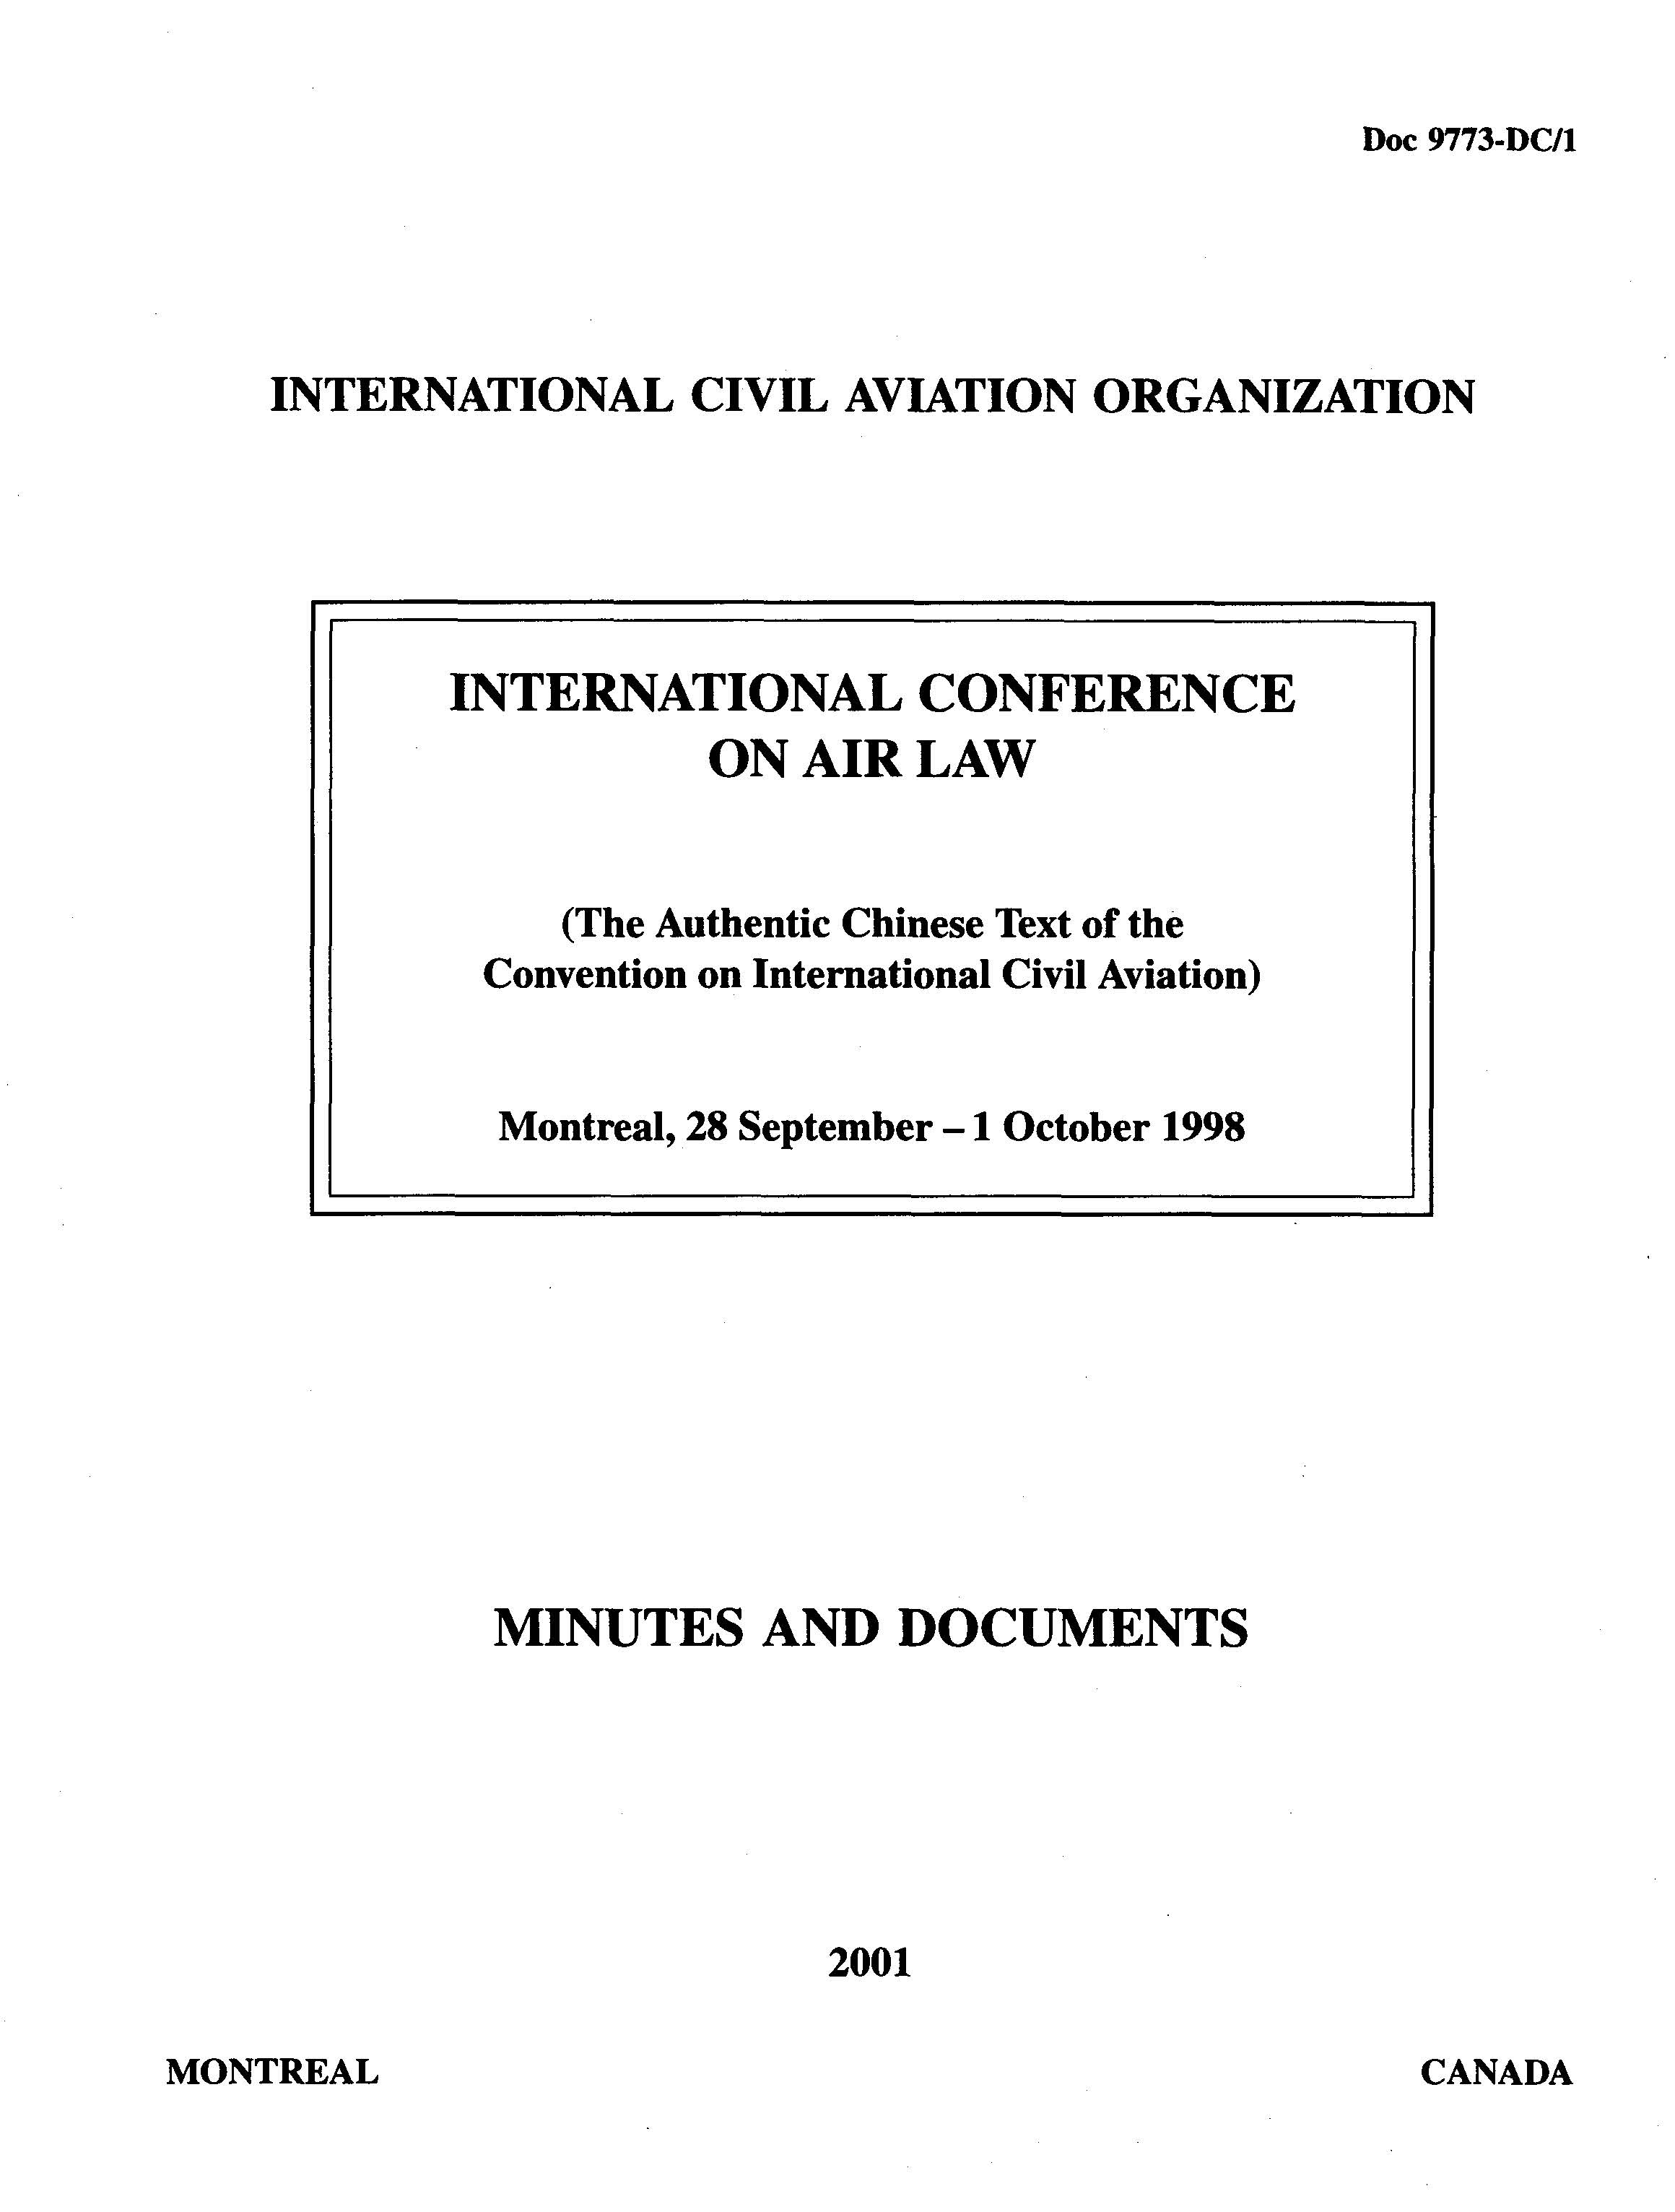 ICAO 9773